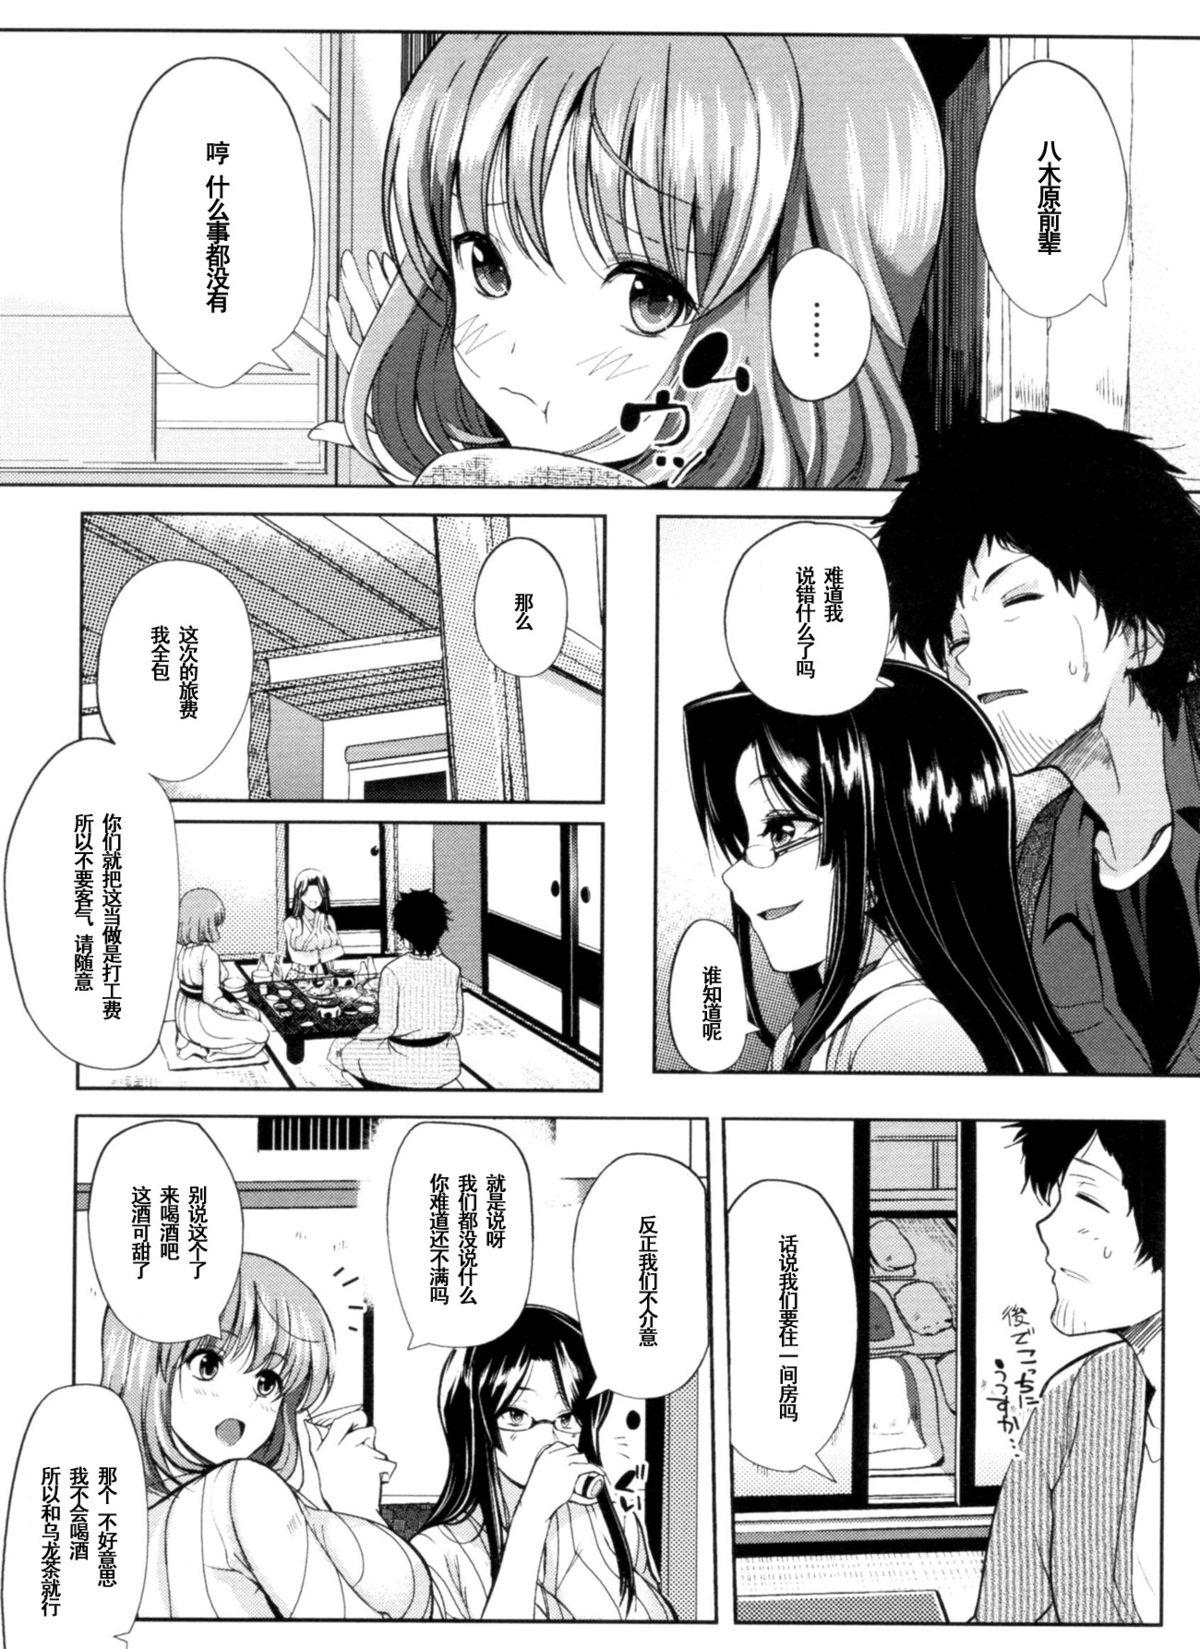 Teacher Onsen + Enkai + Senpai＝♥♥♥ Stroking - Page 3